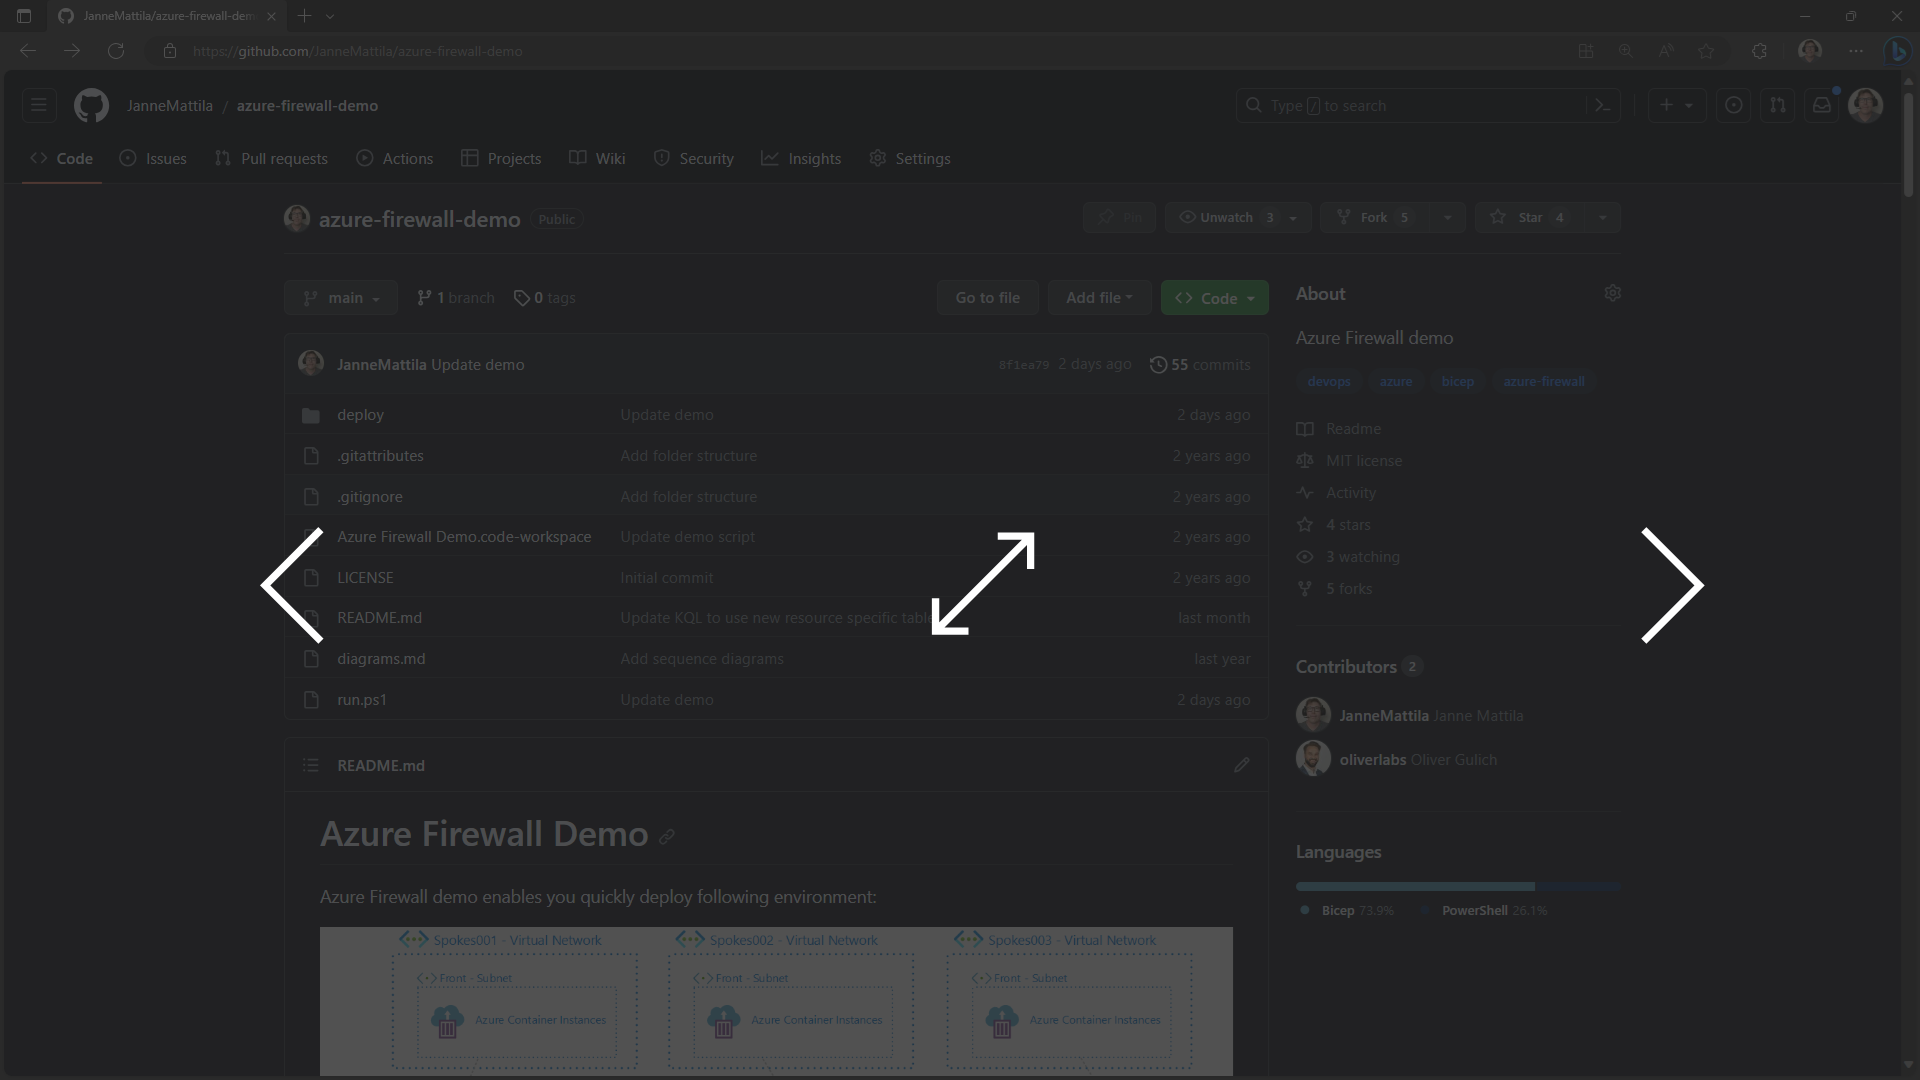 Azure Firewall Demo deployment instructions